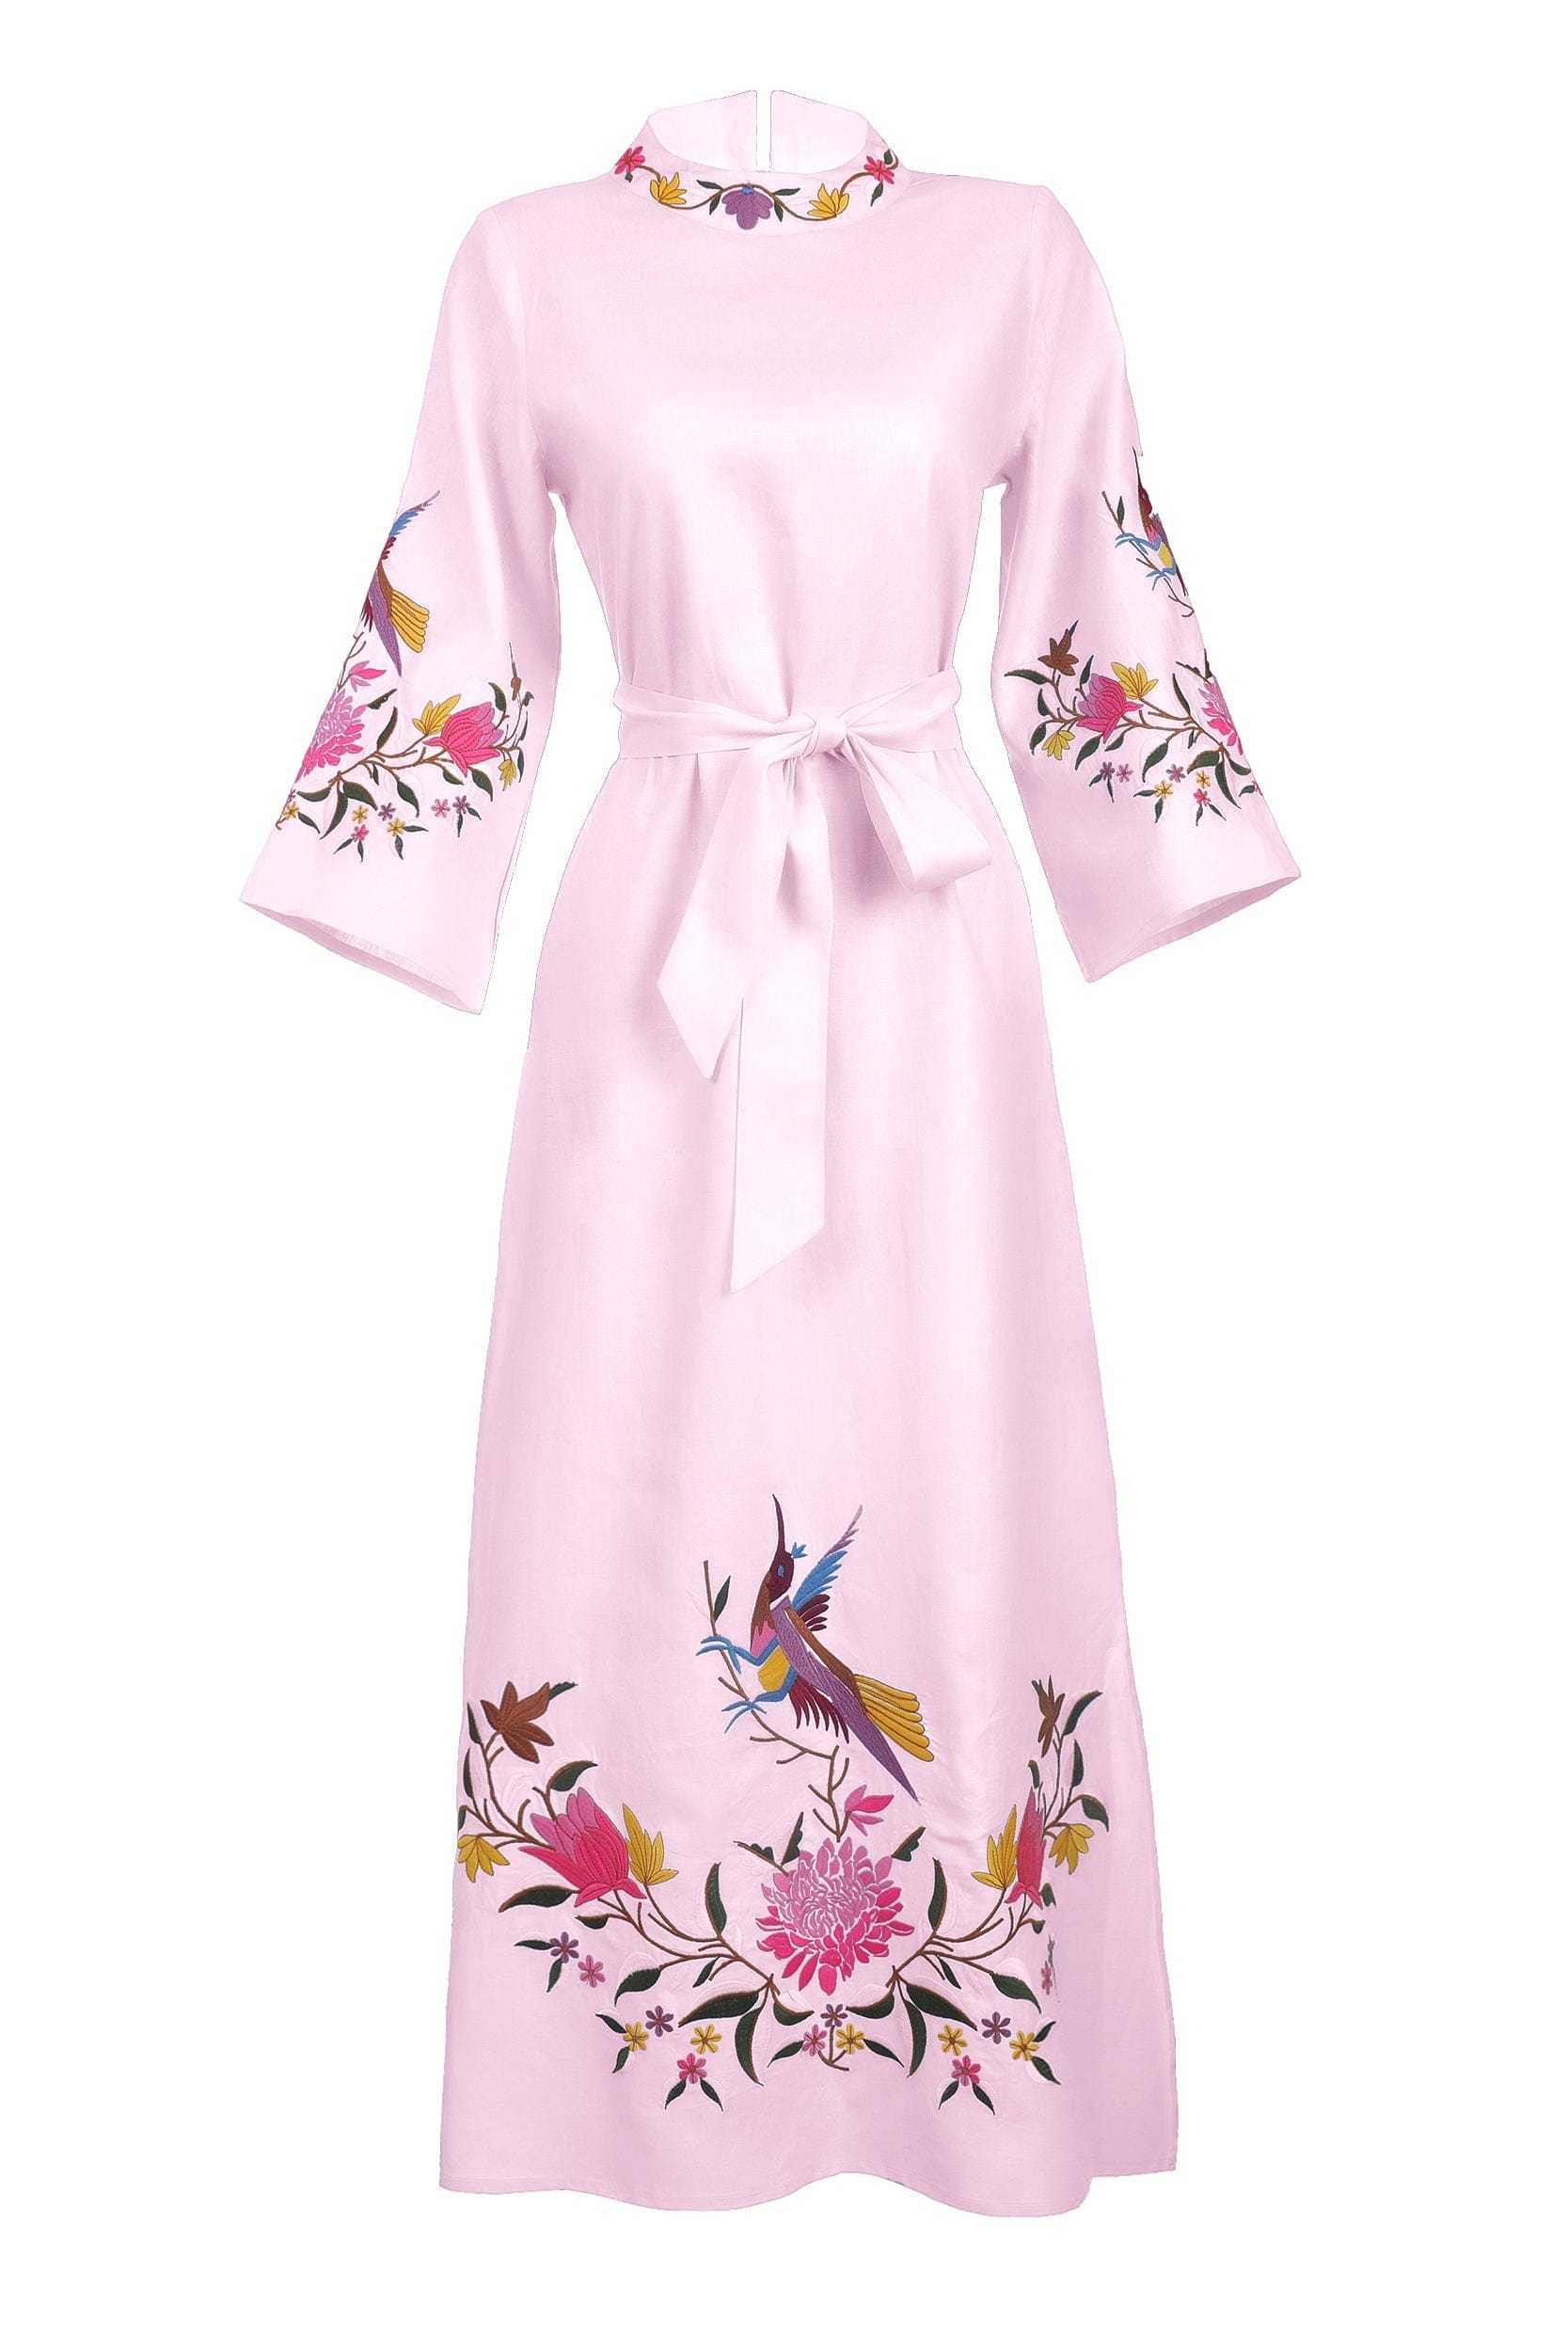 Fanm Mon Dress L / Light Pink Asia